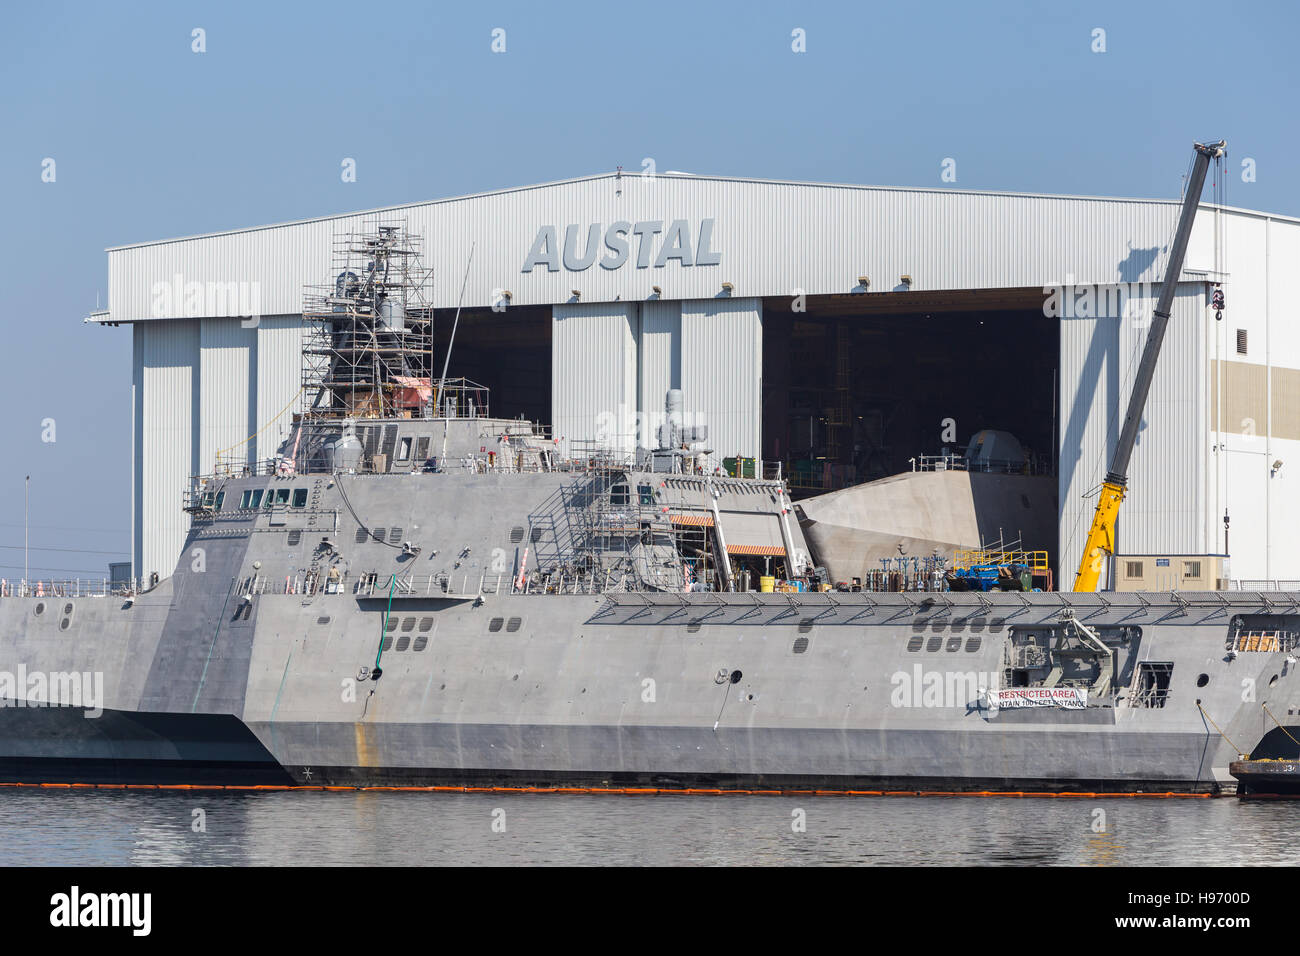 USS Manchester Littoral Combat Ship (LCS) in costruzione presso il cantiere navale Austal sul Fiume Mobile in Mobile, Alabama. Foto Stock